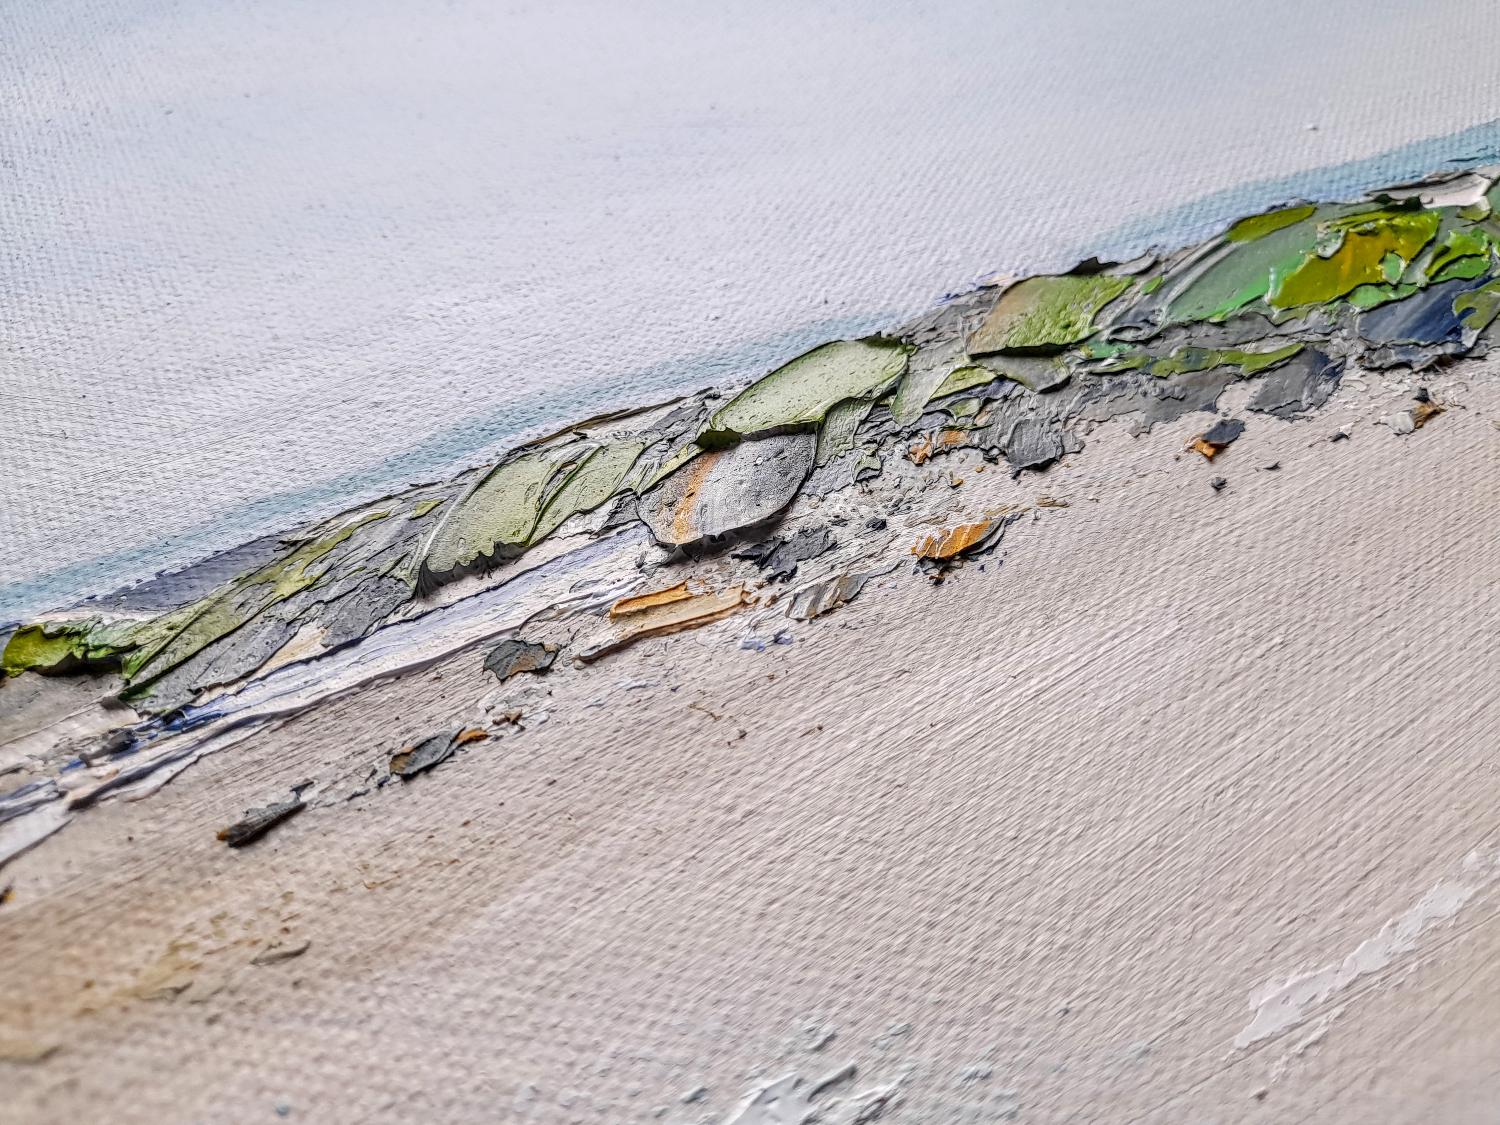 Une peinture à l'huile originale sur toile représentant une belle journée à Rhossili Bay sur la péninsule de Gower. La vue sur la longue plage donne une impression d'espace, tandis que la palette de couleurs évoque une journée fraîche et